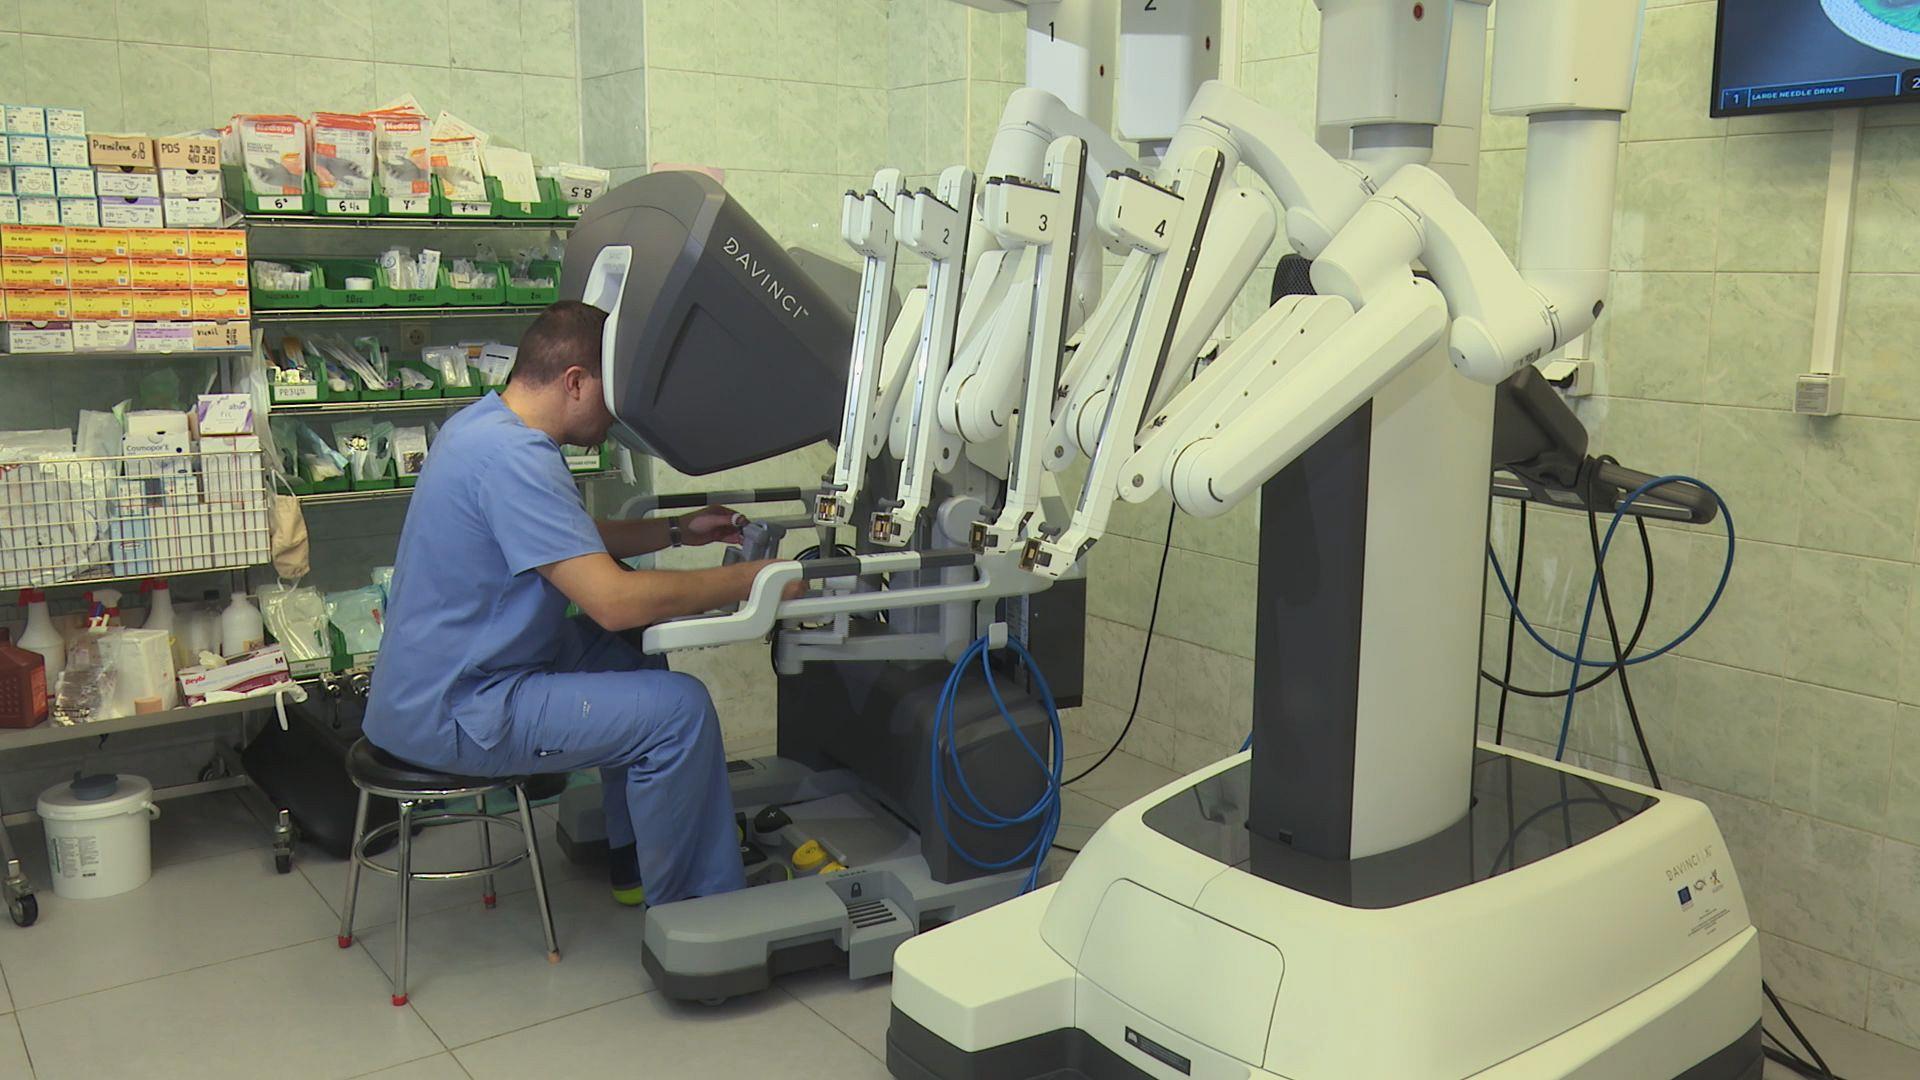 În această țară, roboții asistă medicii să efectueze intervențiile chirurgicale